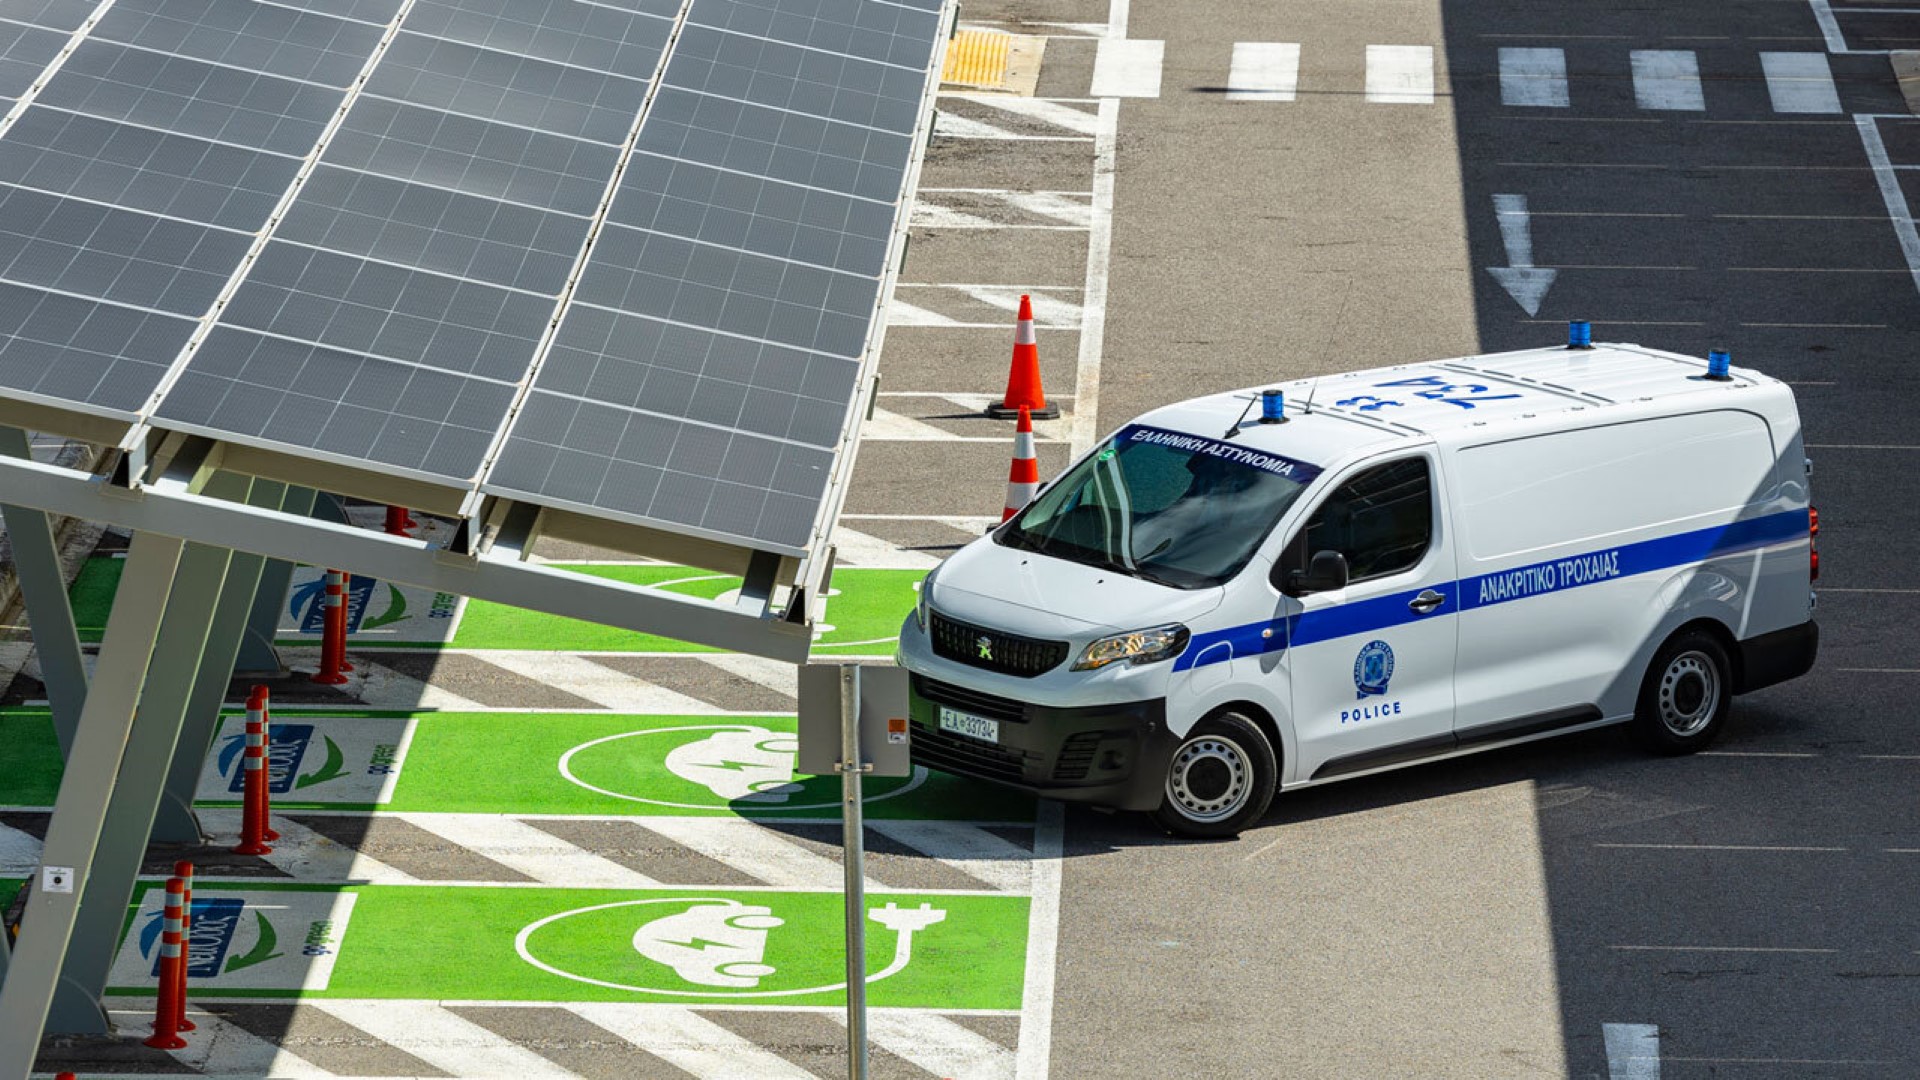 Νέα Οδός: Δωρεά του πρώτου ηλεκτρικό ανακριτικού περιπολικού σε ελληνικό αυτοκινητόδρομο